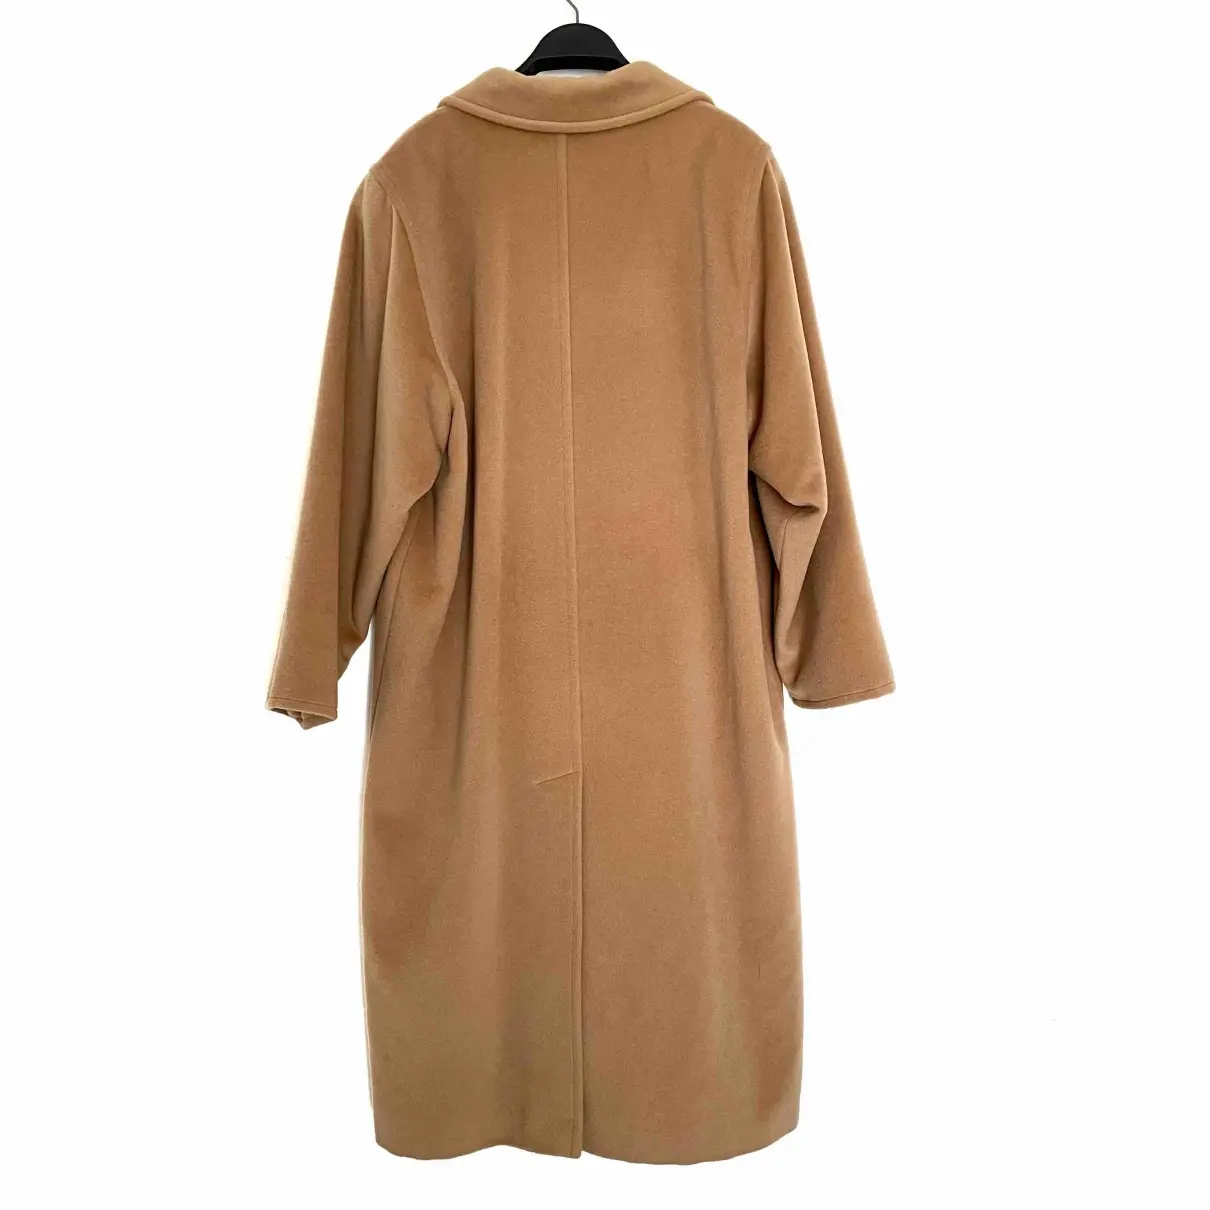 Buy Max Mara 101801 wool coat online - Vintage